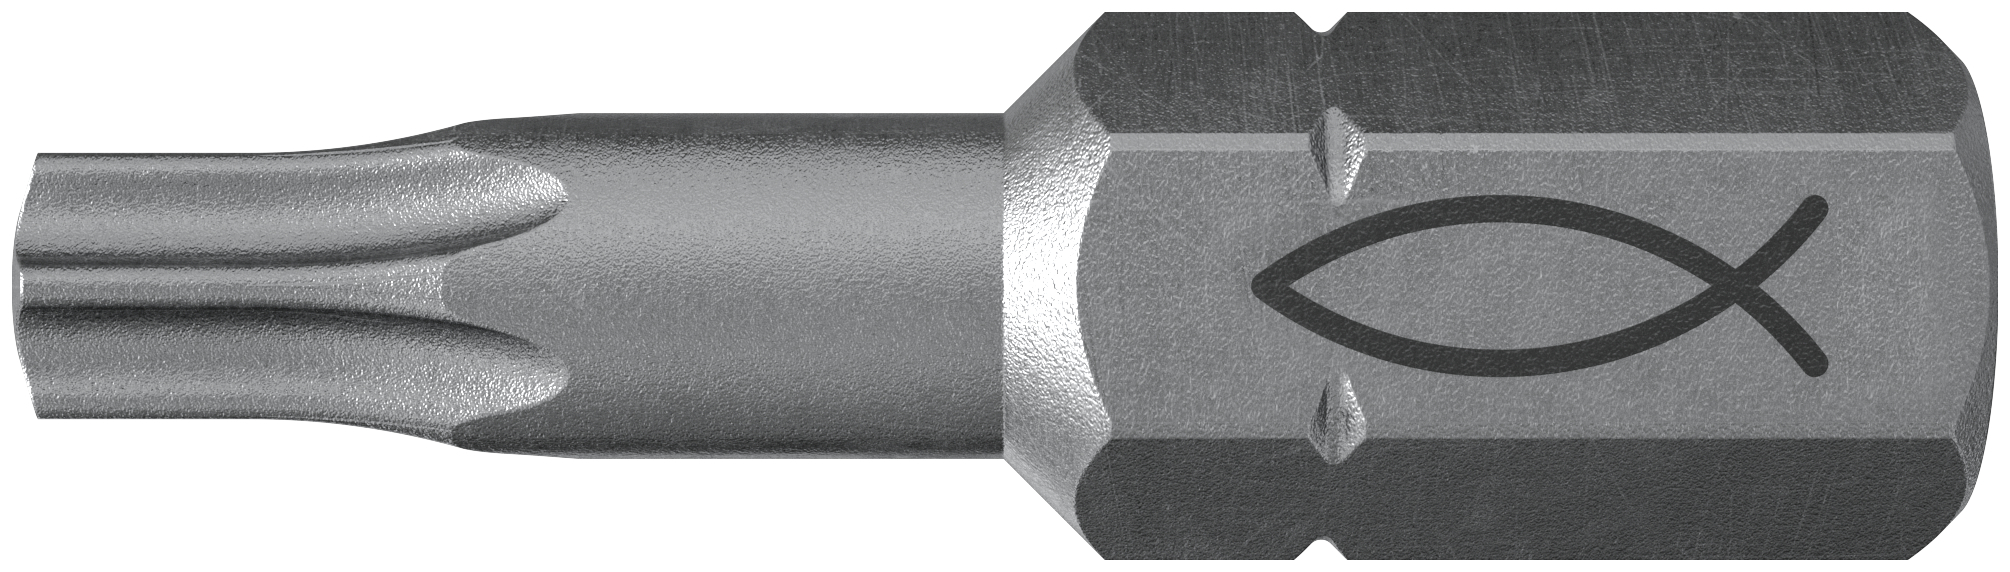 fischer Inserto per avvitatore FPB T 20 PROFI Bit W 10 (10 Pz.) L'inserto per trapano e avvitatore, in acciaio di alta qualit con elevata resistenza all?abrasione per uso professionale.